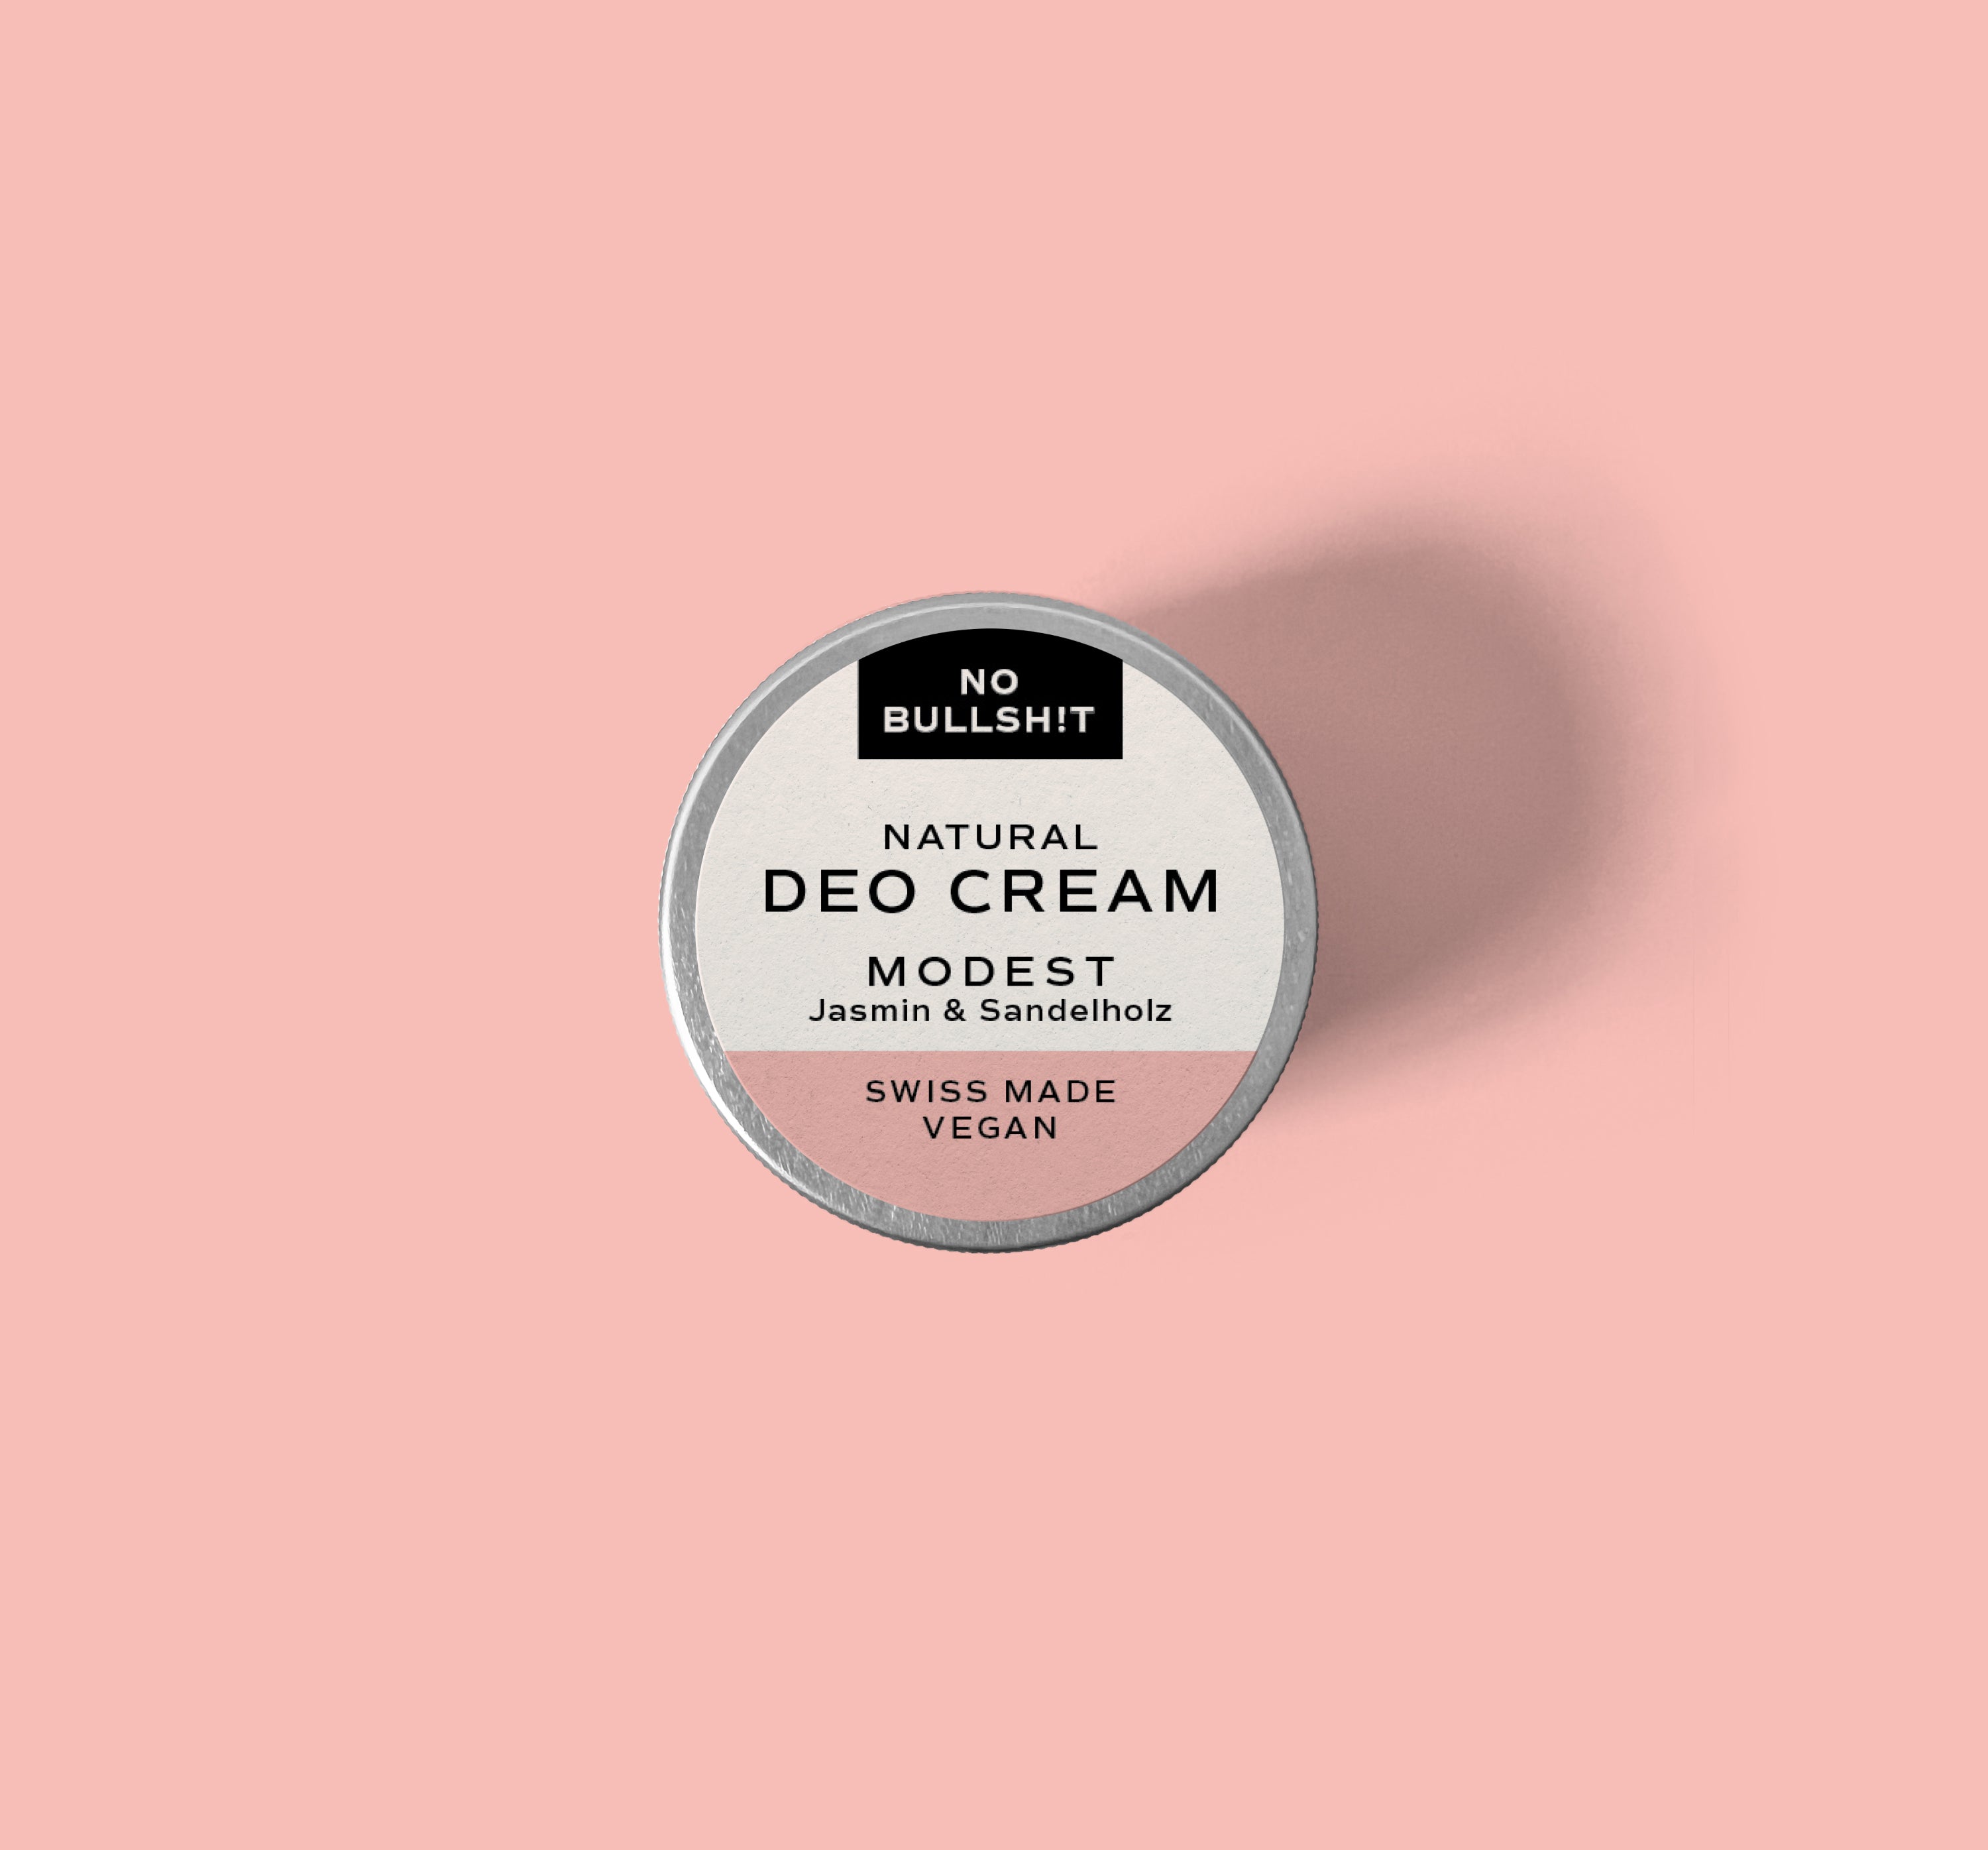 Deo Cream Modest